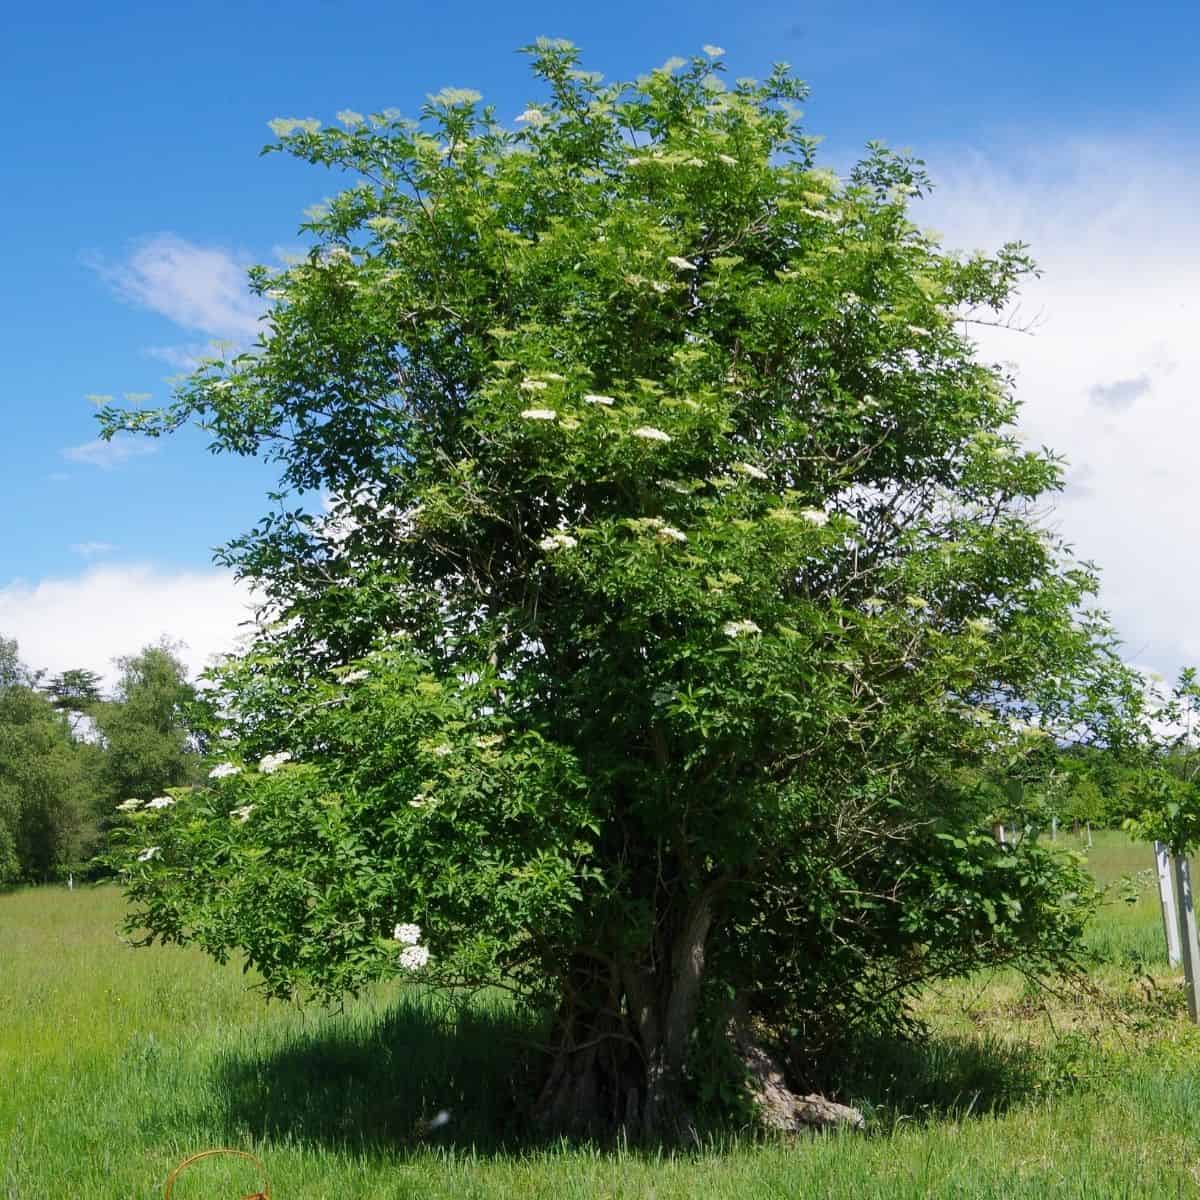 Elder tree in a meadow showing elderflowers